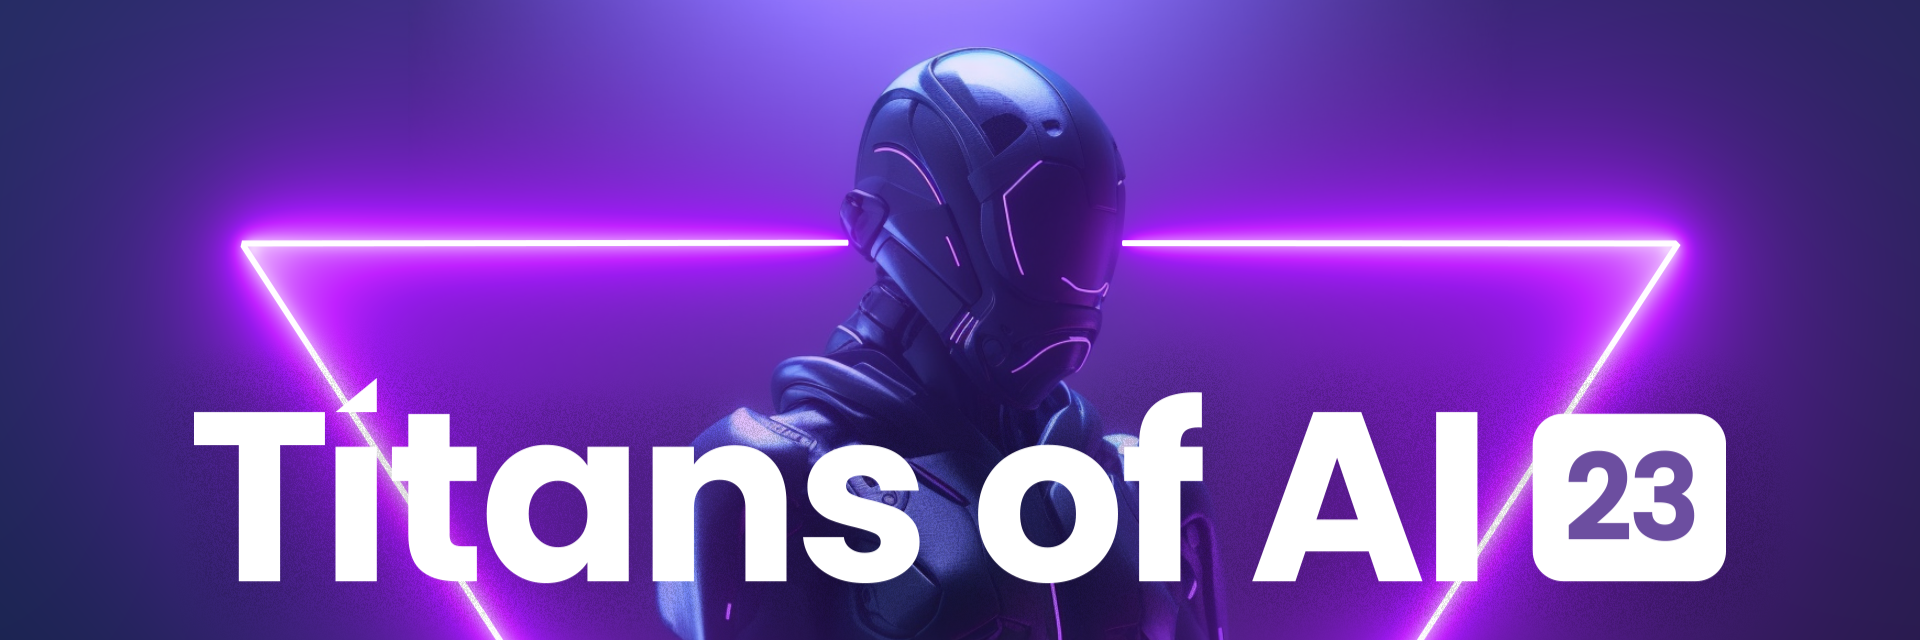 Titans of AI | Houston